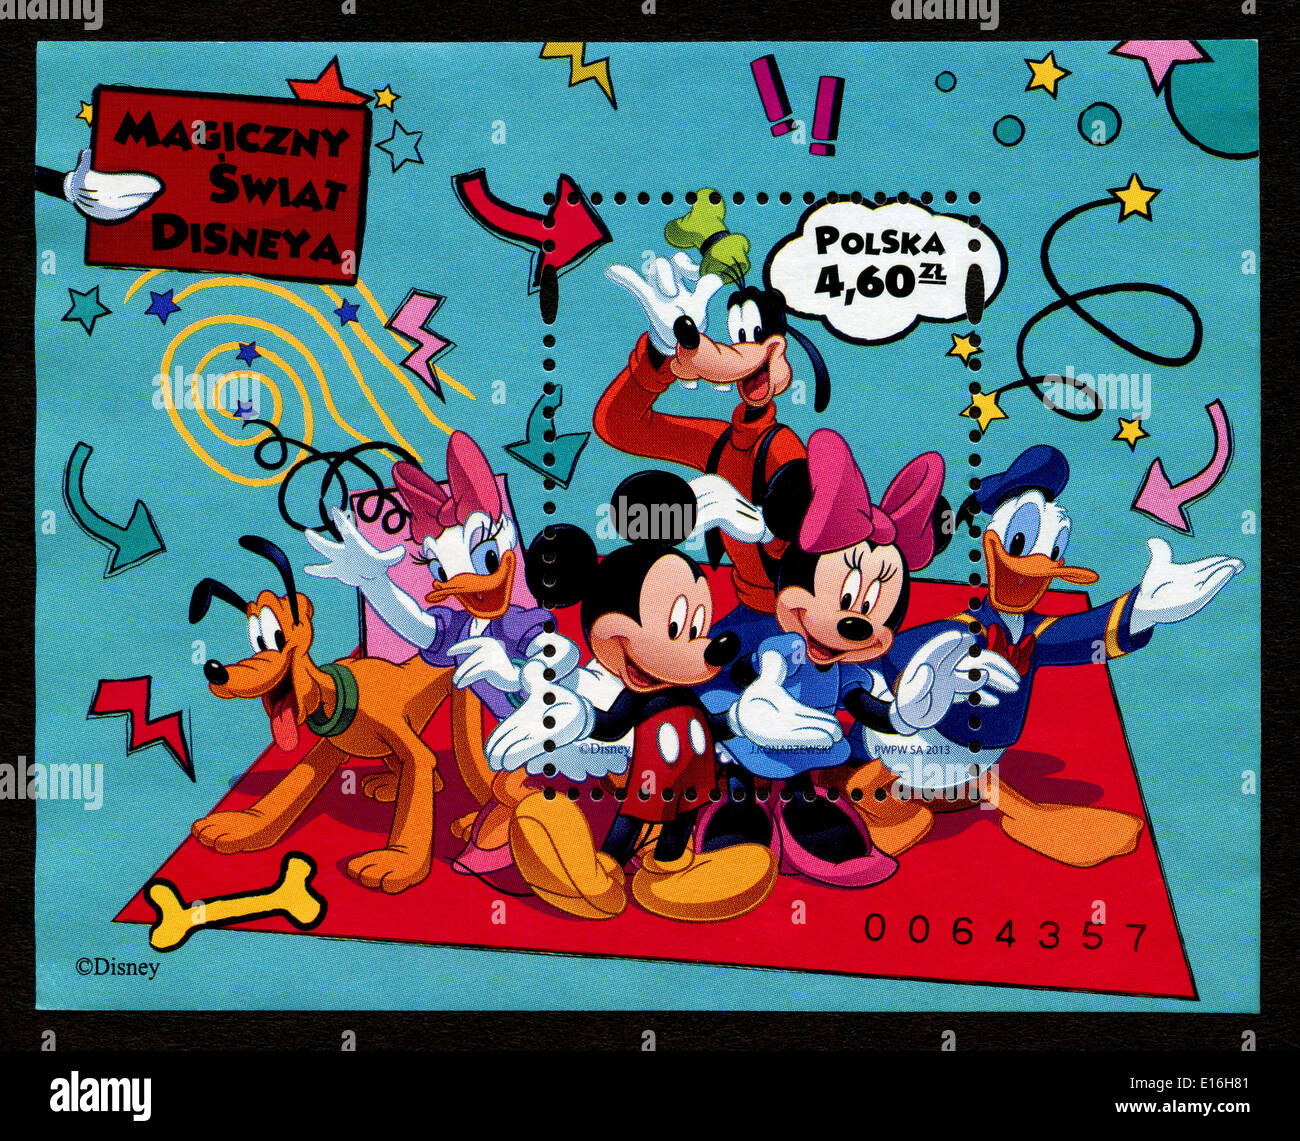 Polonia sello representando a Mickey Mouse Fotografía de stock - Alamy